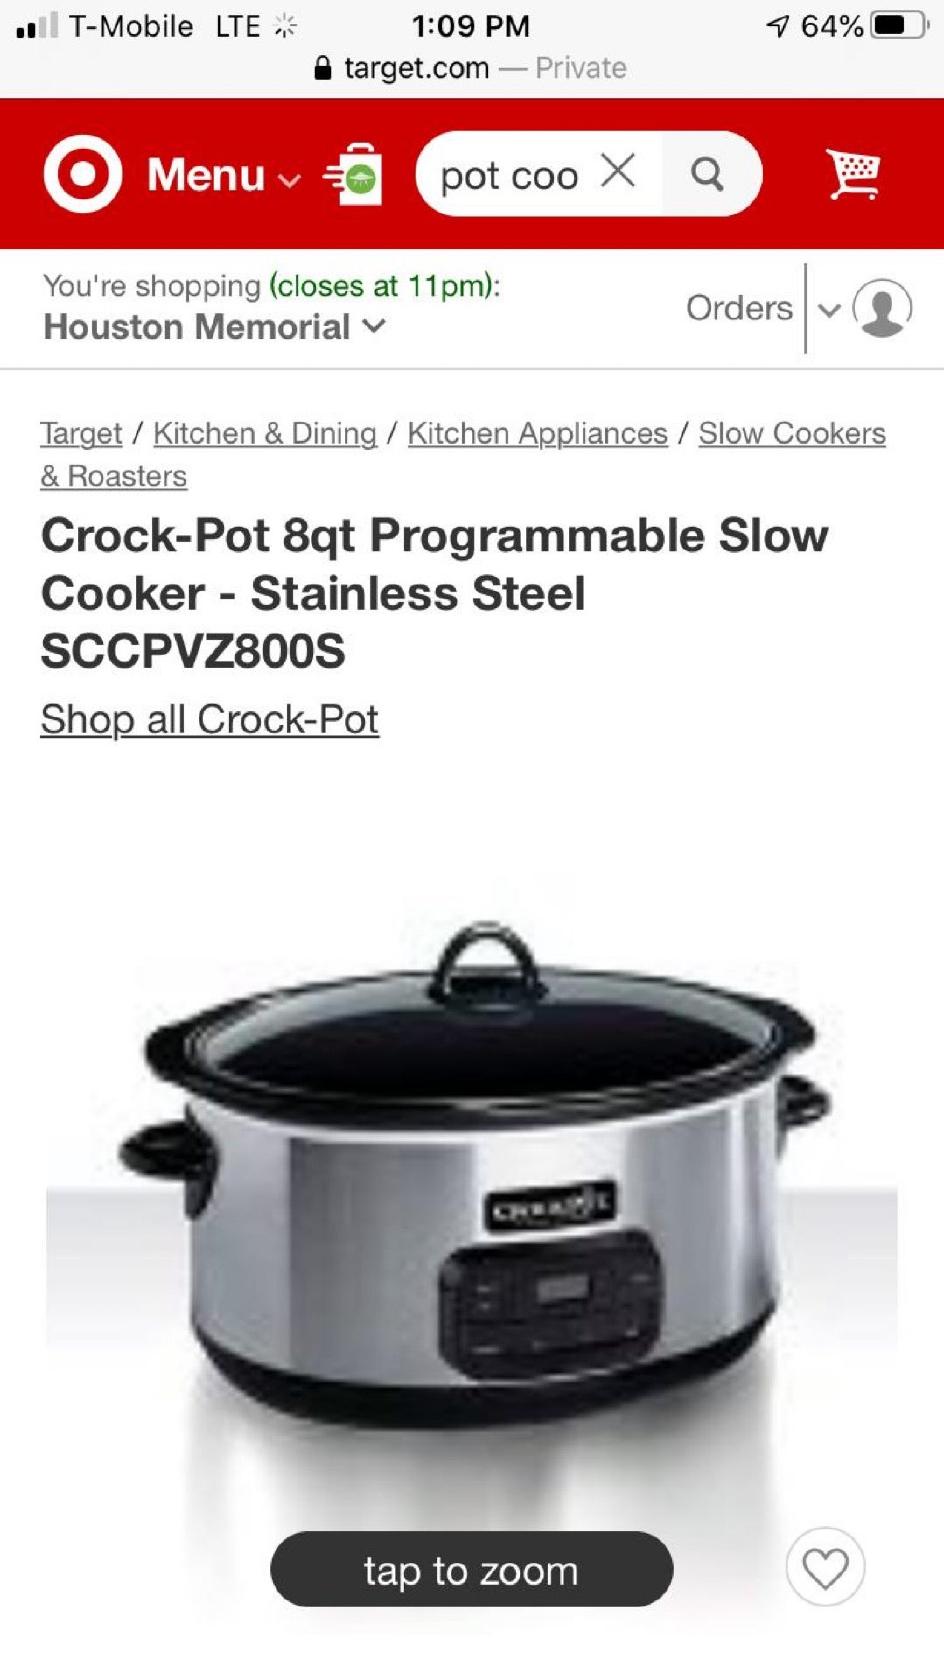 8 Quart Programmable Crockpot Cooker sccpvz800-s